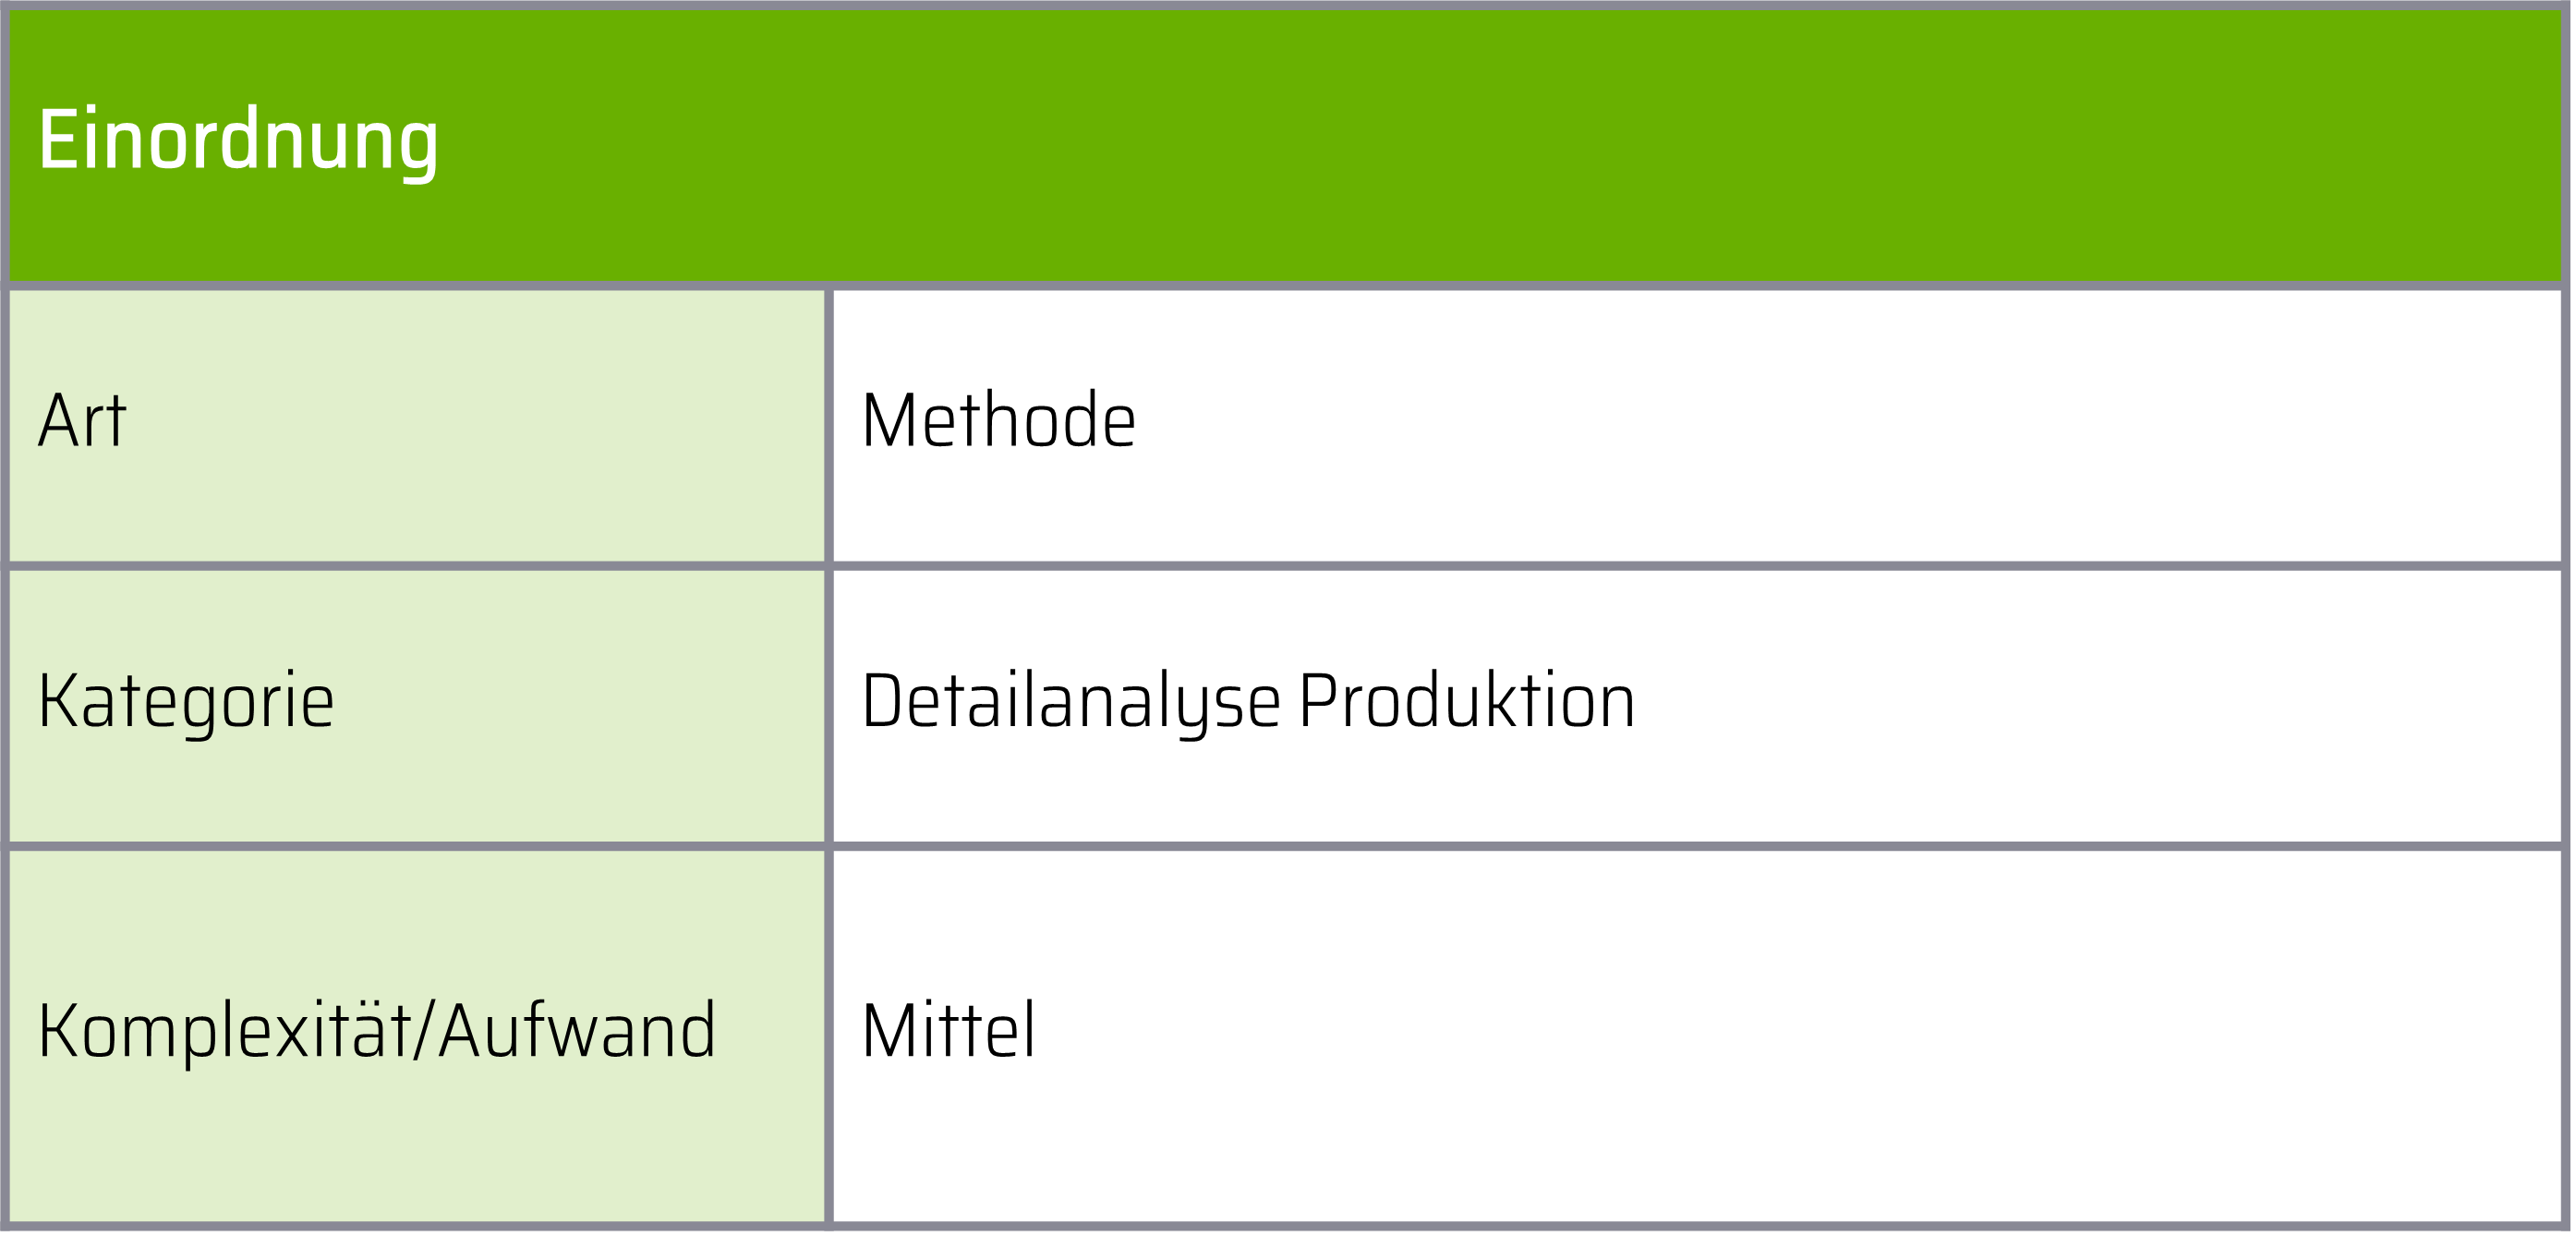 Zu sehen ist eine Tabelle, die die Materialflusskostenrechnung anhand drei Kategorien einordnet. Zu lesen ist: Die Art ist eine Methode. Die Kategorie ist Detailanalyse Produktion. Die Komplexität ist Mittel.